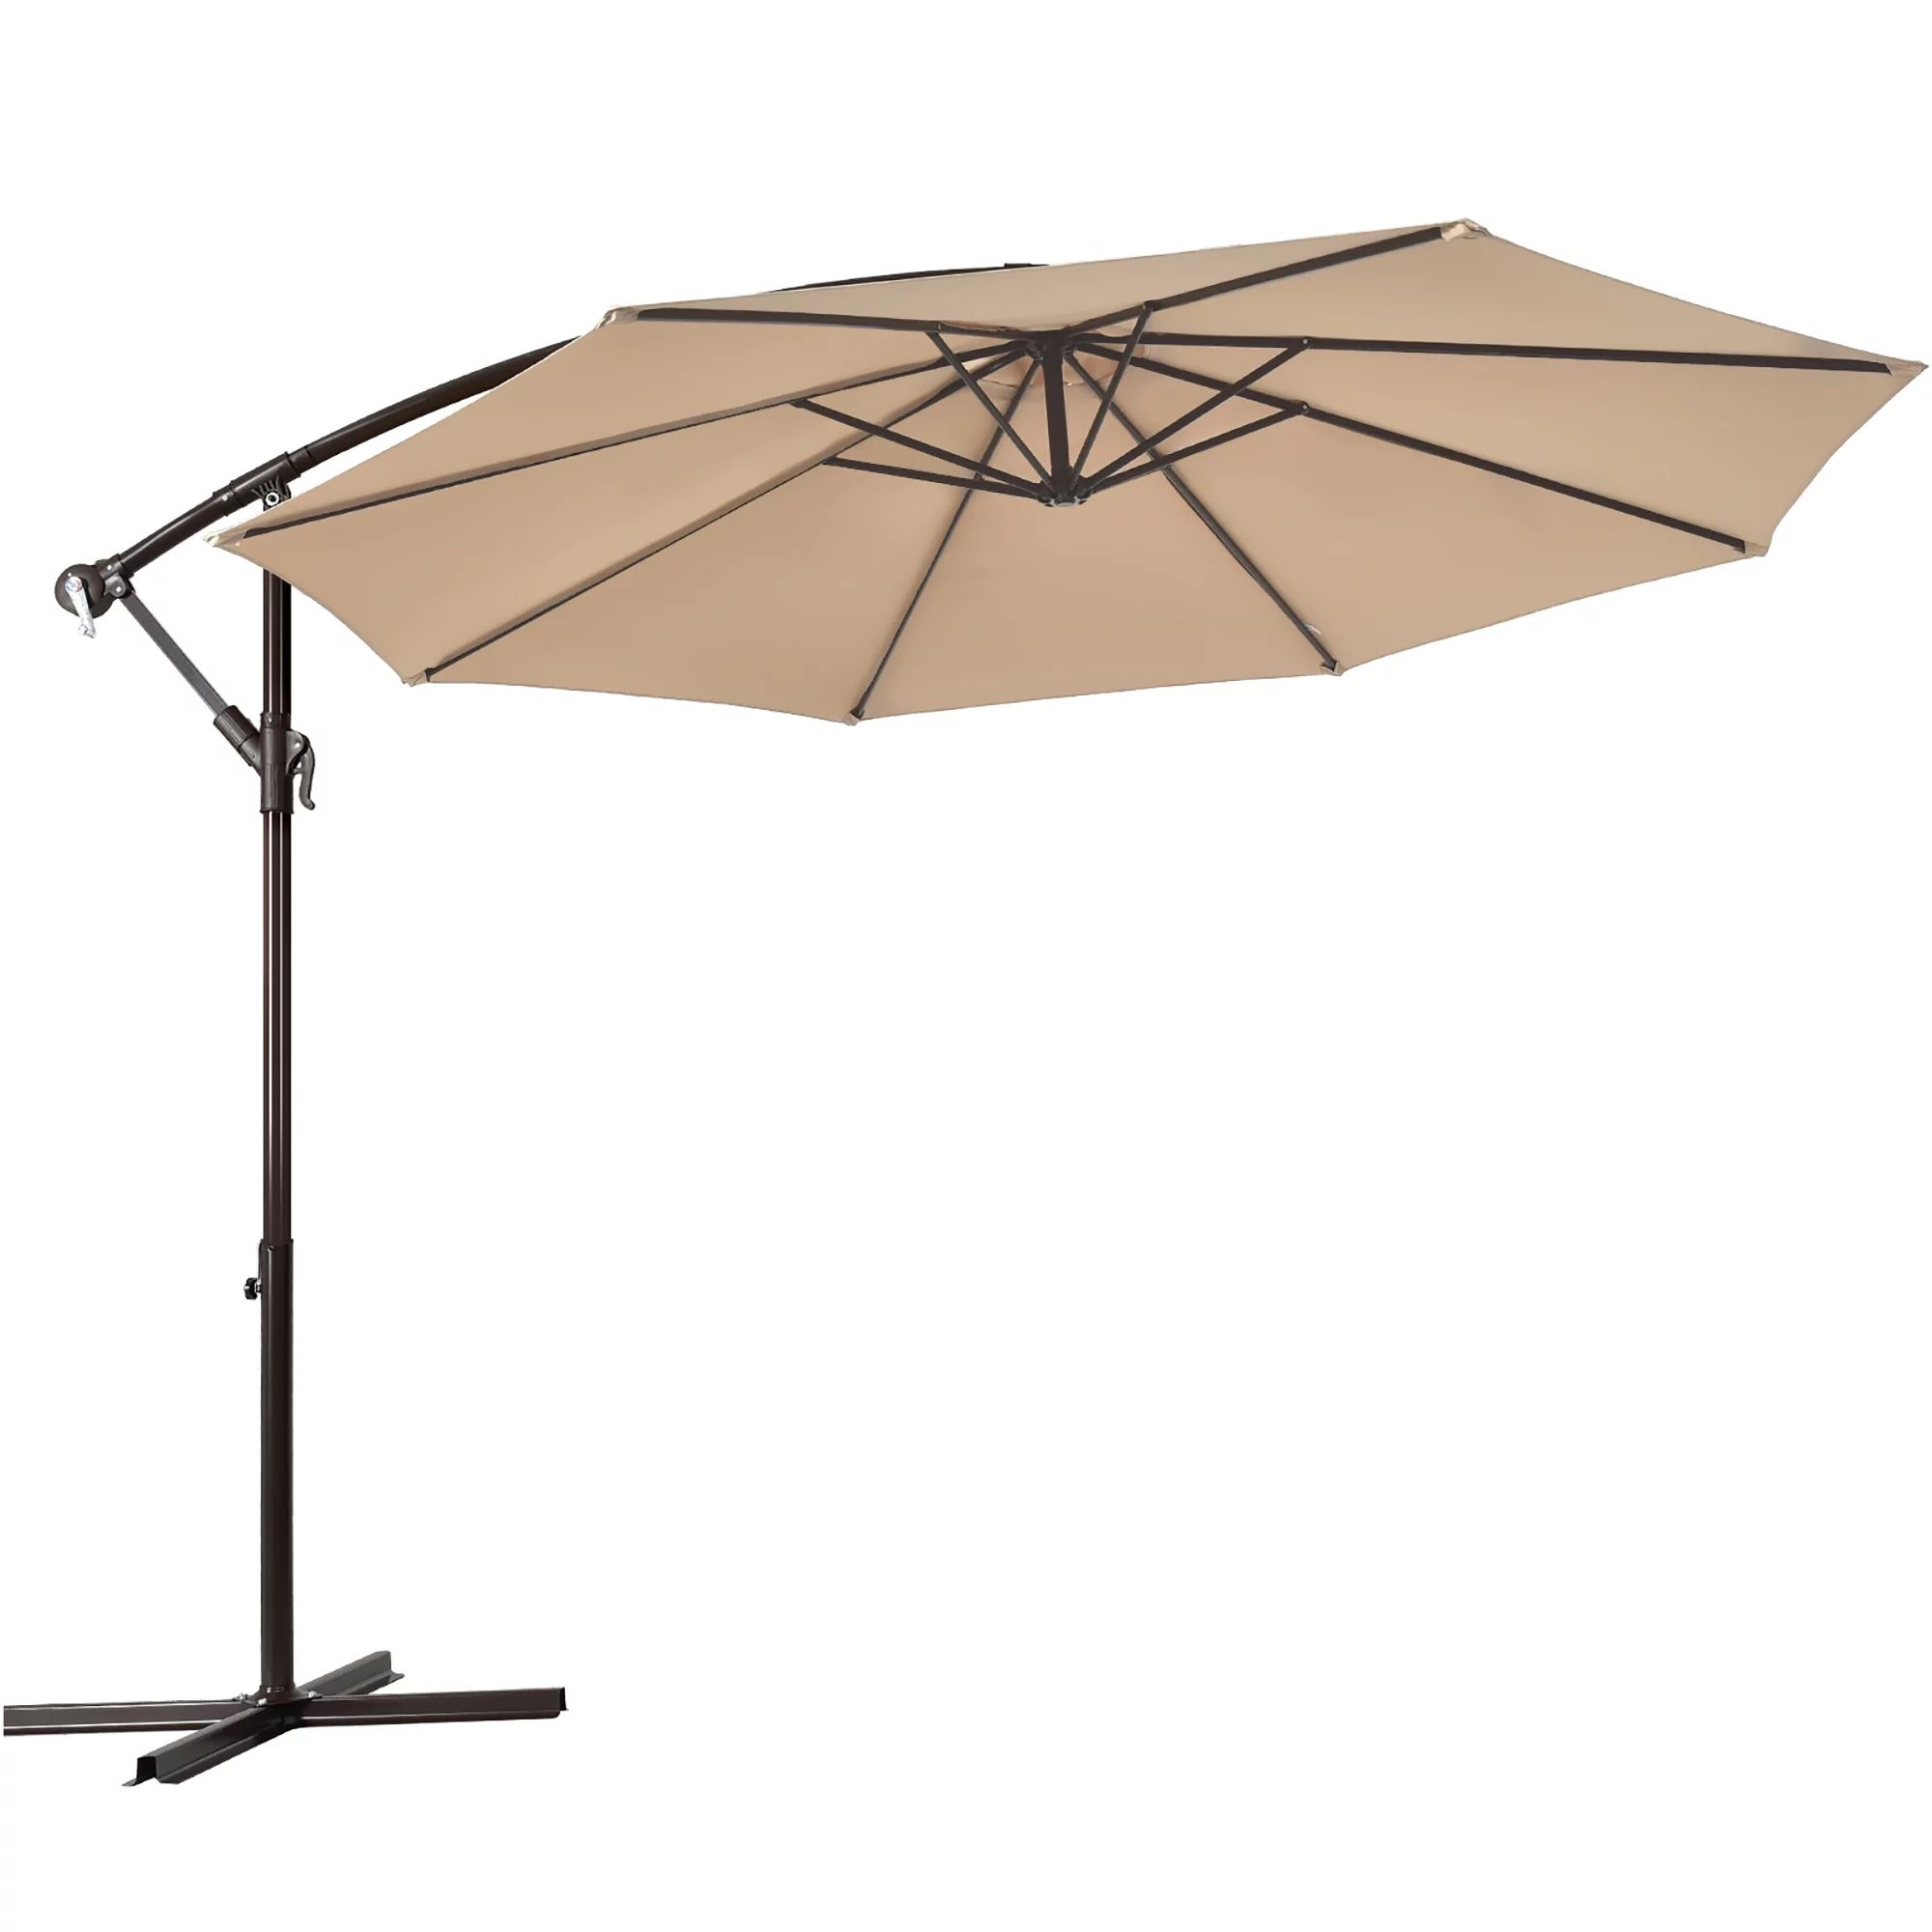 Costway 10' Hanging Umbrella Patio Sun Shade Offset Outdoor Market W/t Cross Base Beige | Walmart (US)